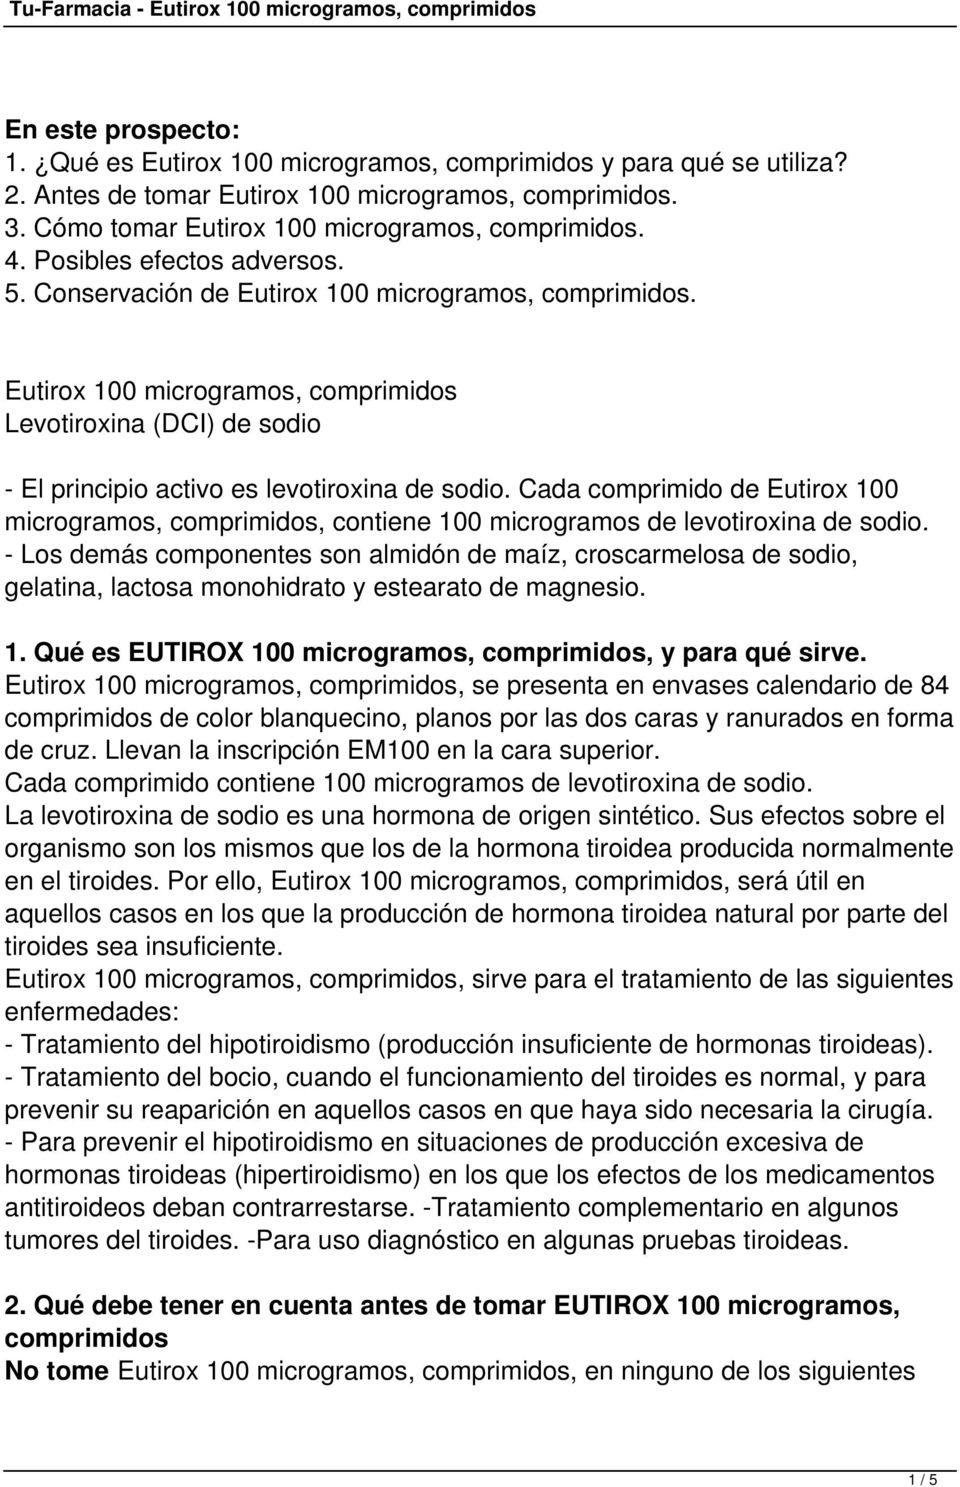 Cada comprimido de Eutirox 100 microgramos, comprimidos, contiene 100 microgramos de levotiroxina de sodio.